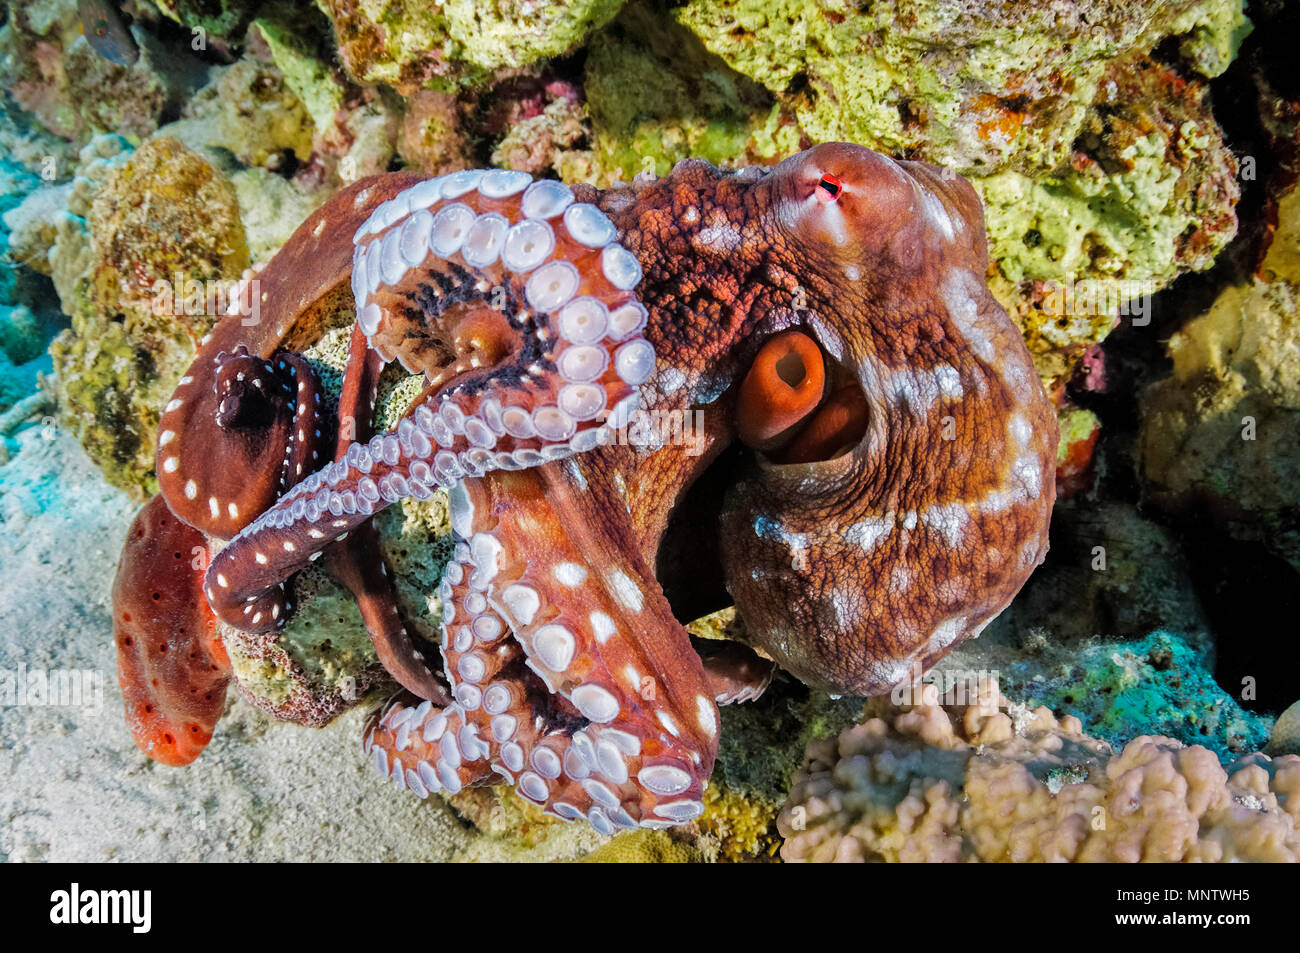 White-spotted octopus, Callistoctopus macropus, démontrant sa capacité de changement de couleur instantané dans l'ordre, l'île de Giftun Reef, Hurghada, Egypte, Rouge S Banque D'Images